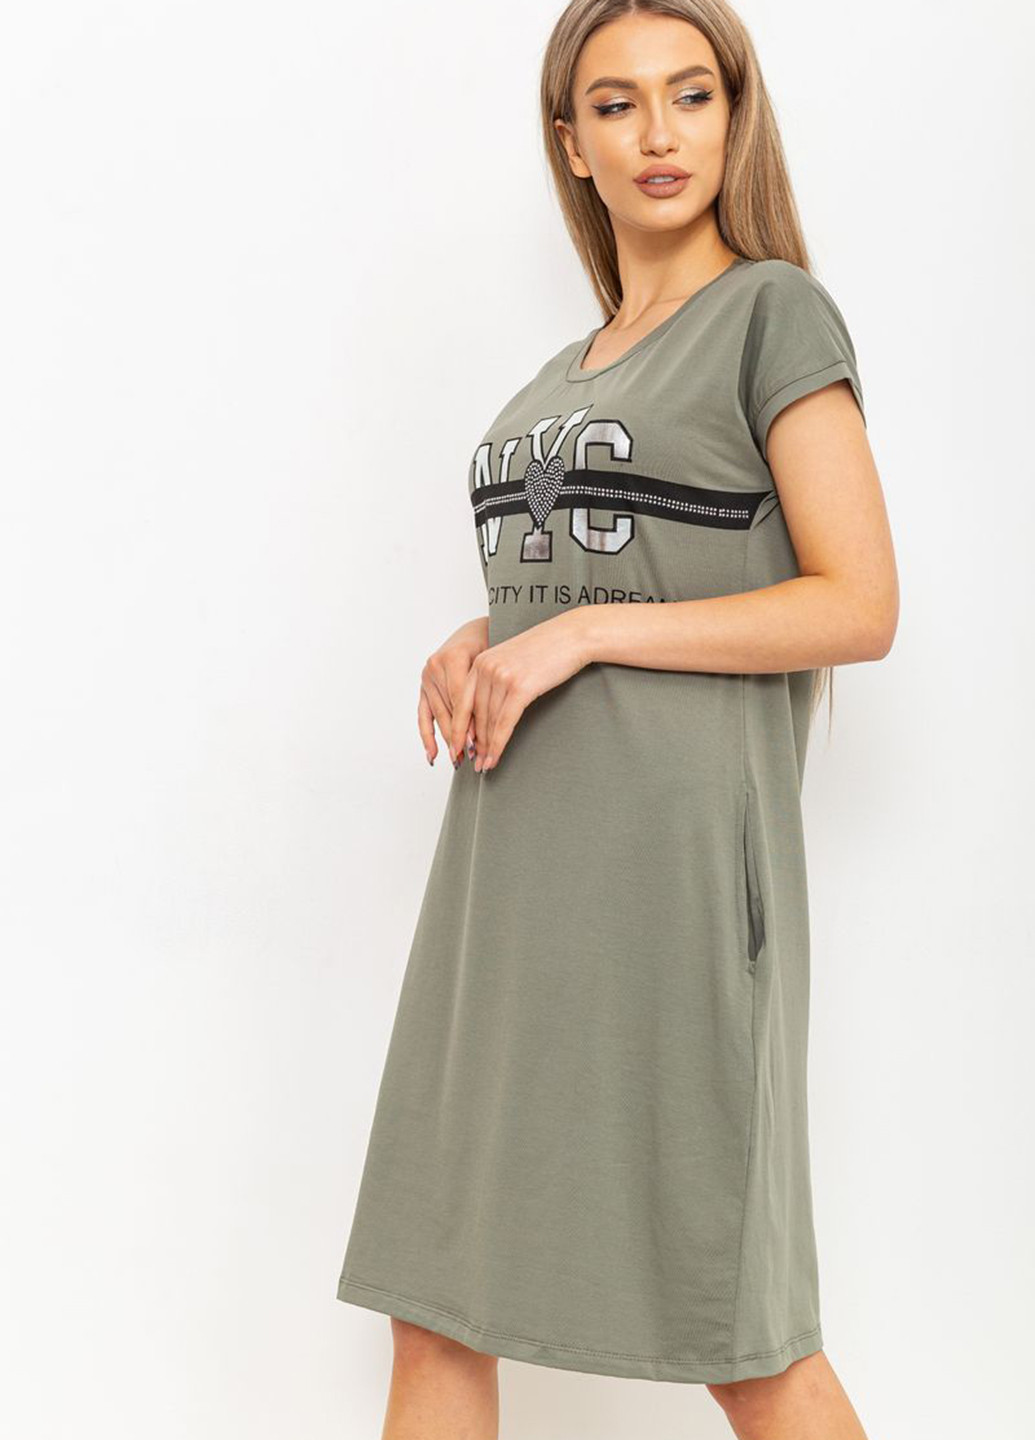 Оливкова домашній сукня сукня-футболка Ager з написами